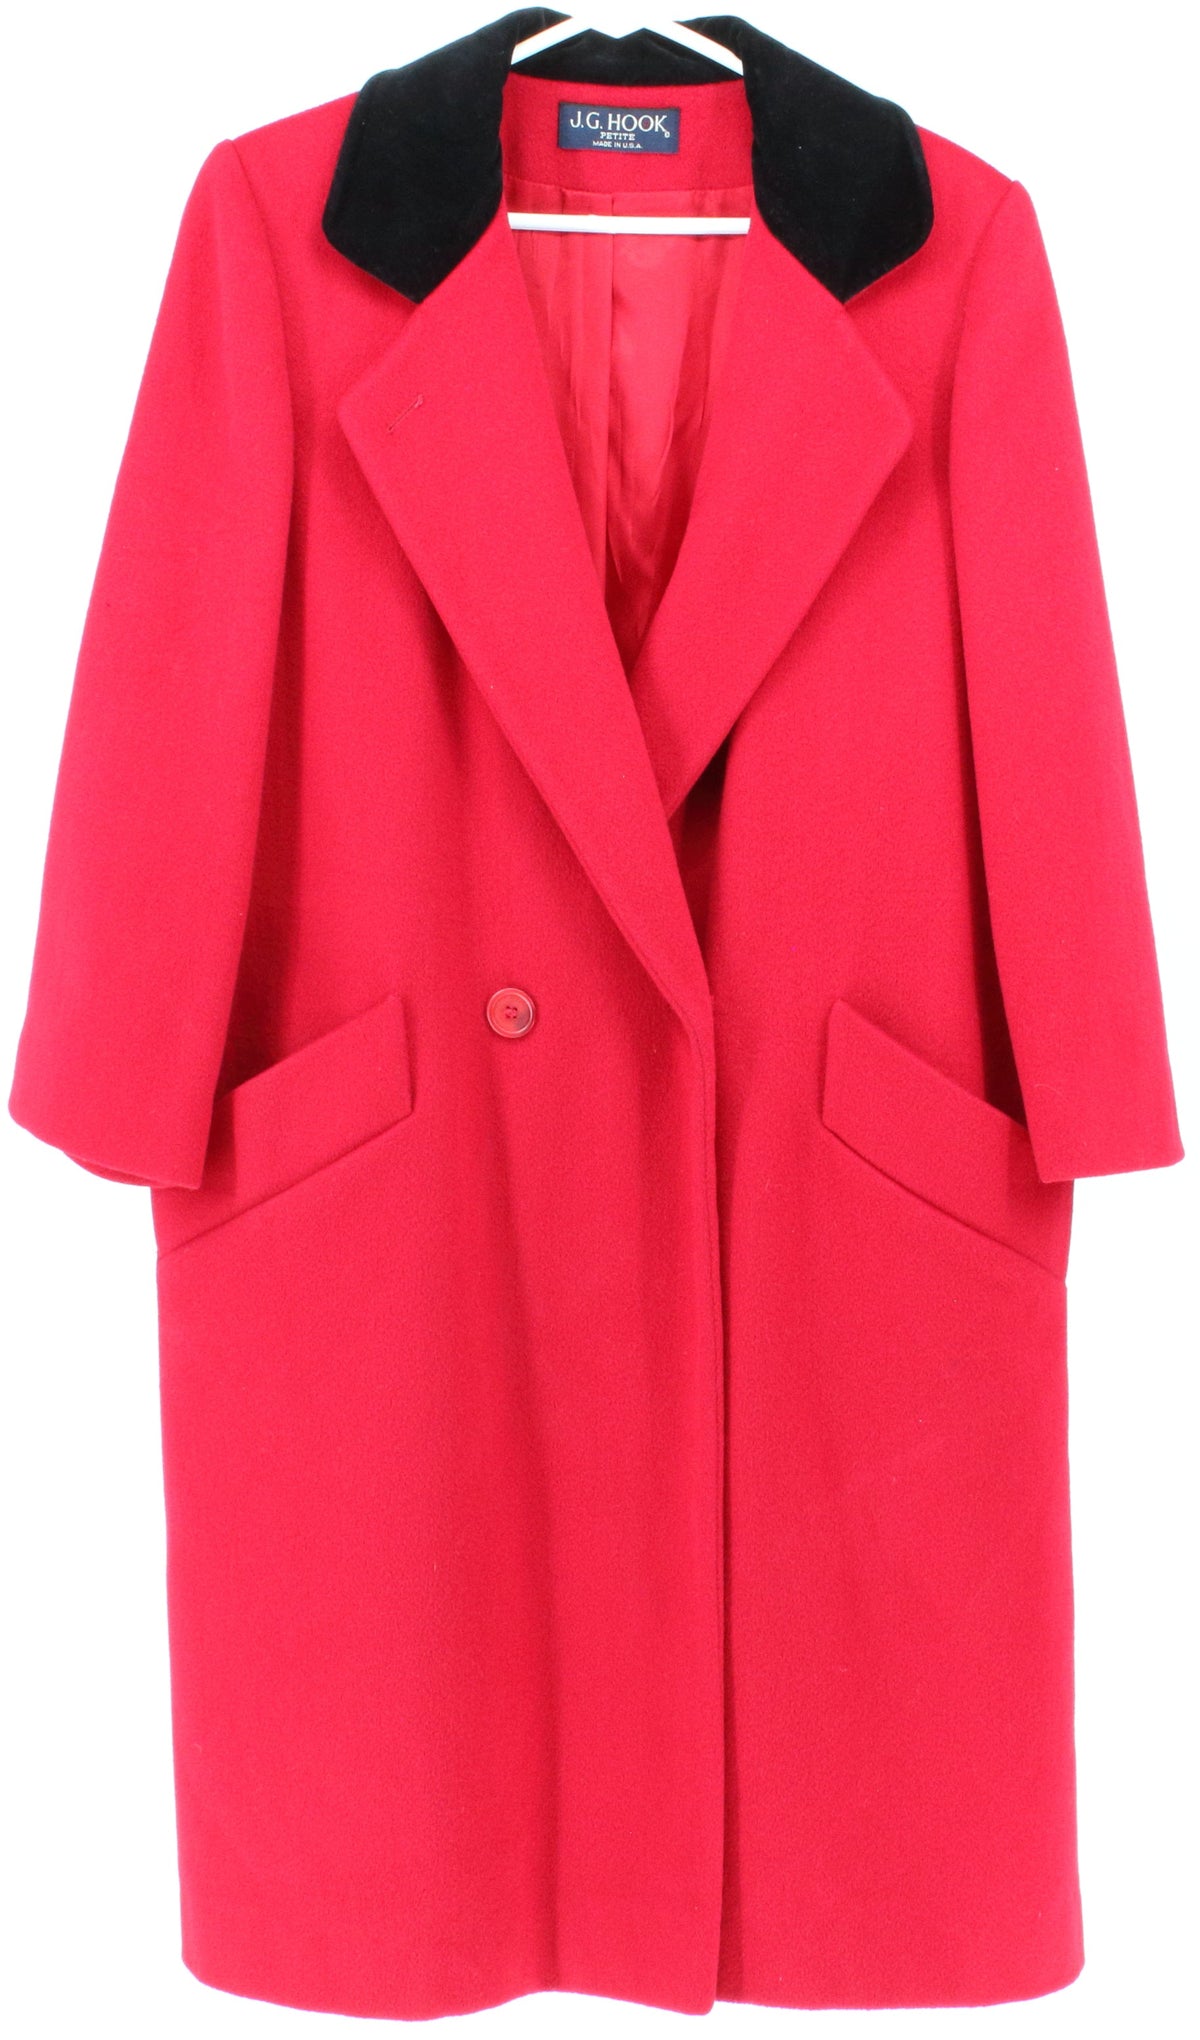 J.G. Hook Petite Red Women's Wool Coat With Black Velvet Collar